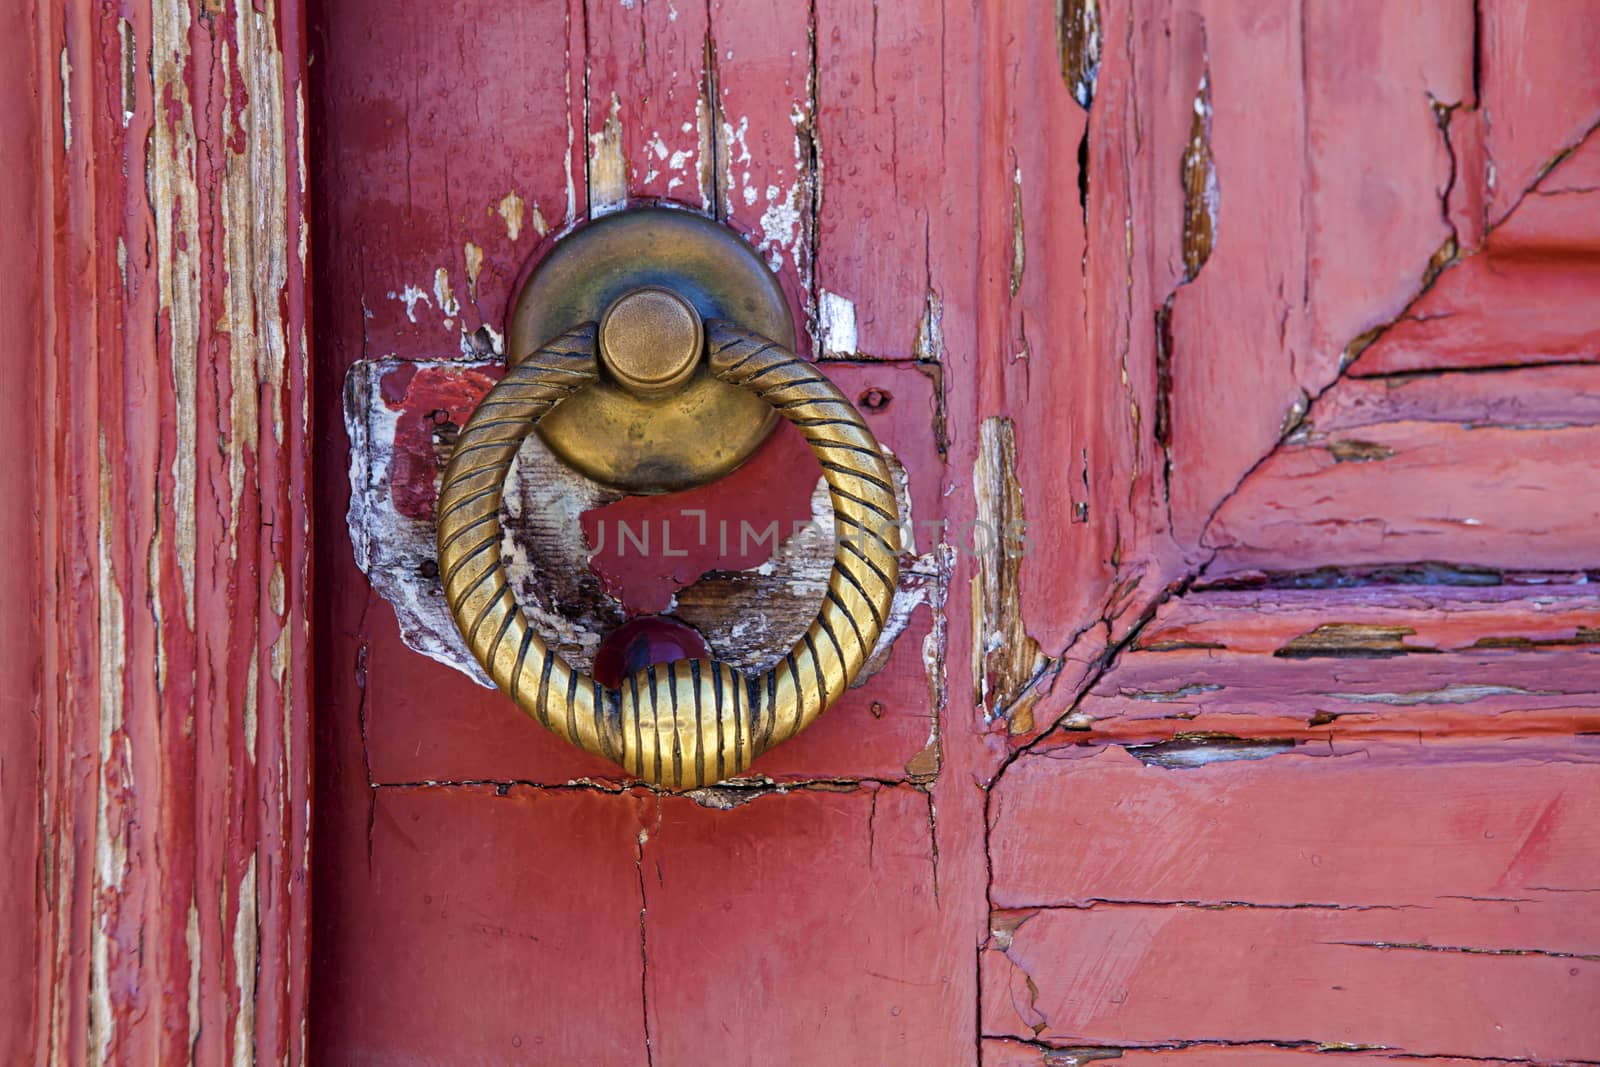 Brass  knocker on old wooden door in Lisbon by kalnenko